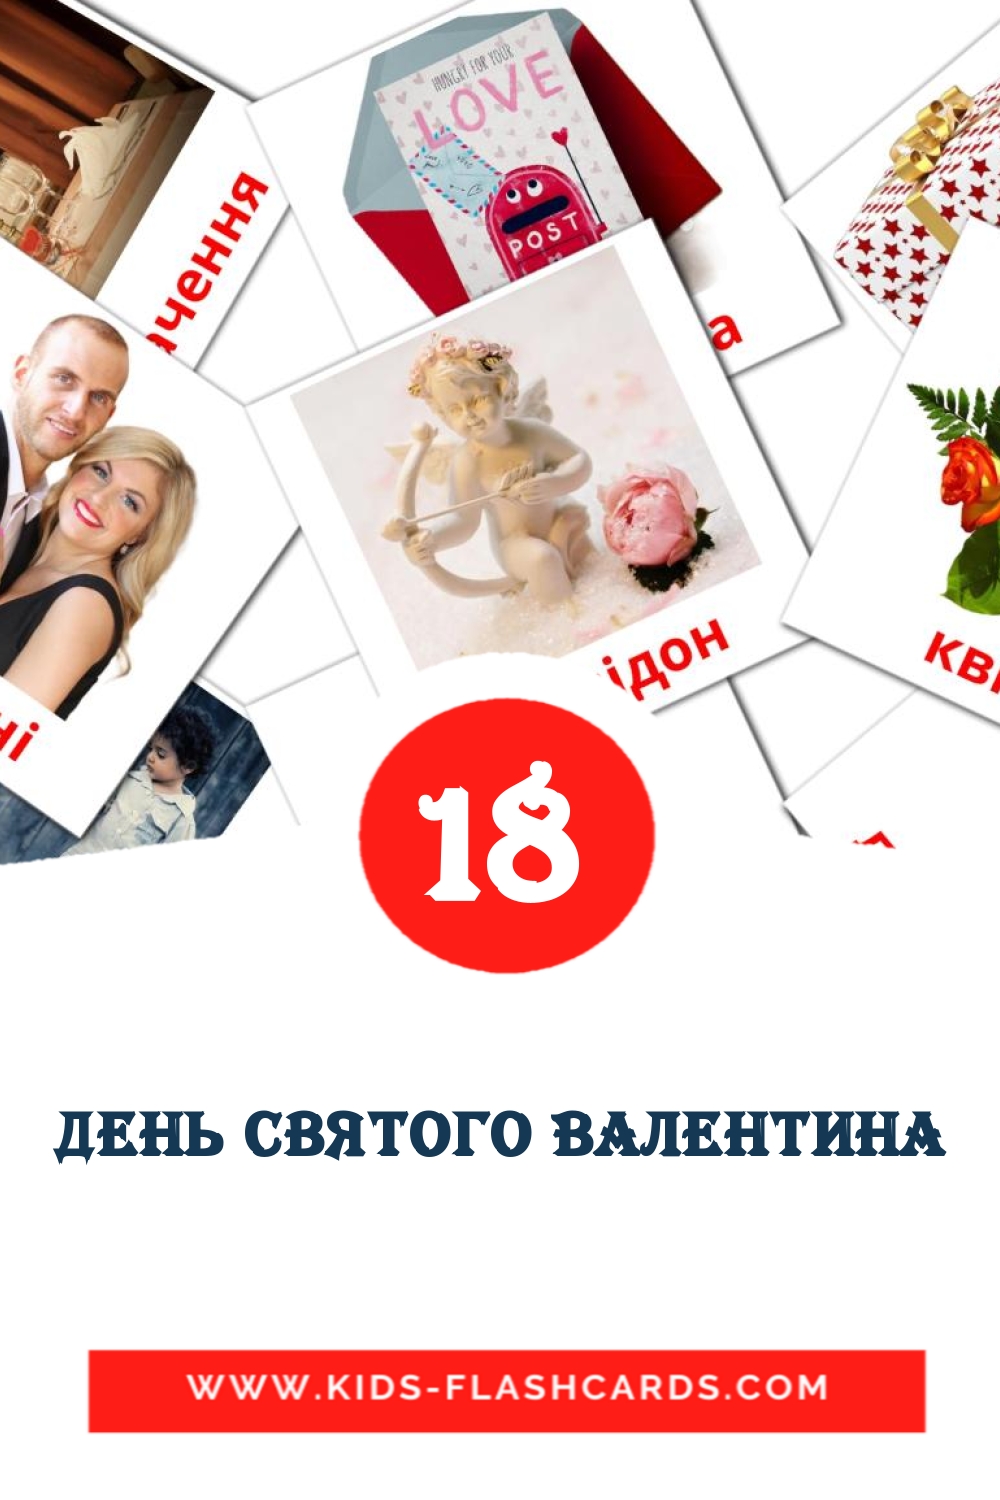 18 tarjetas didacticas de День Святого Валентина para el jardín de infancia en ucraniano